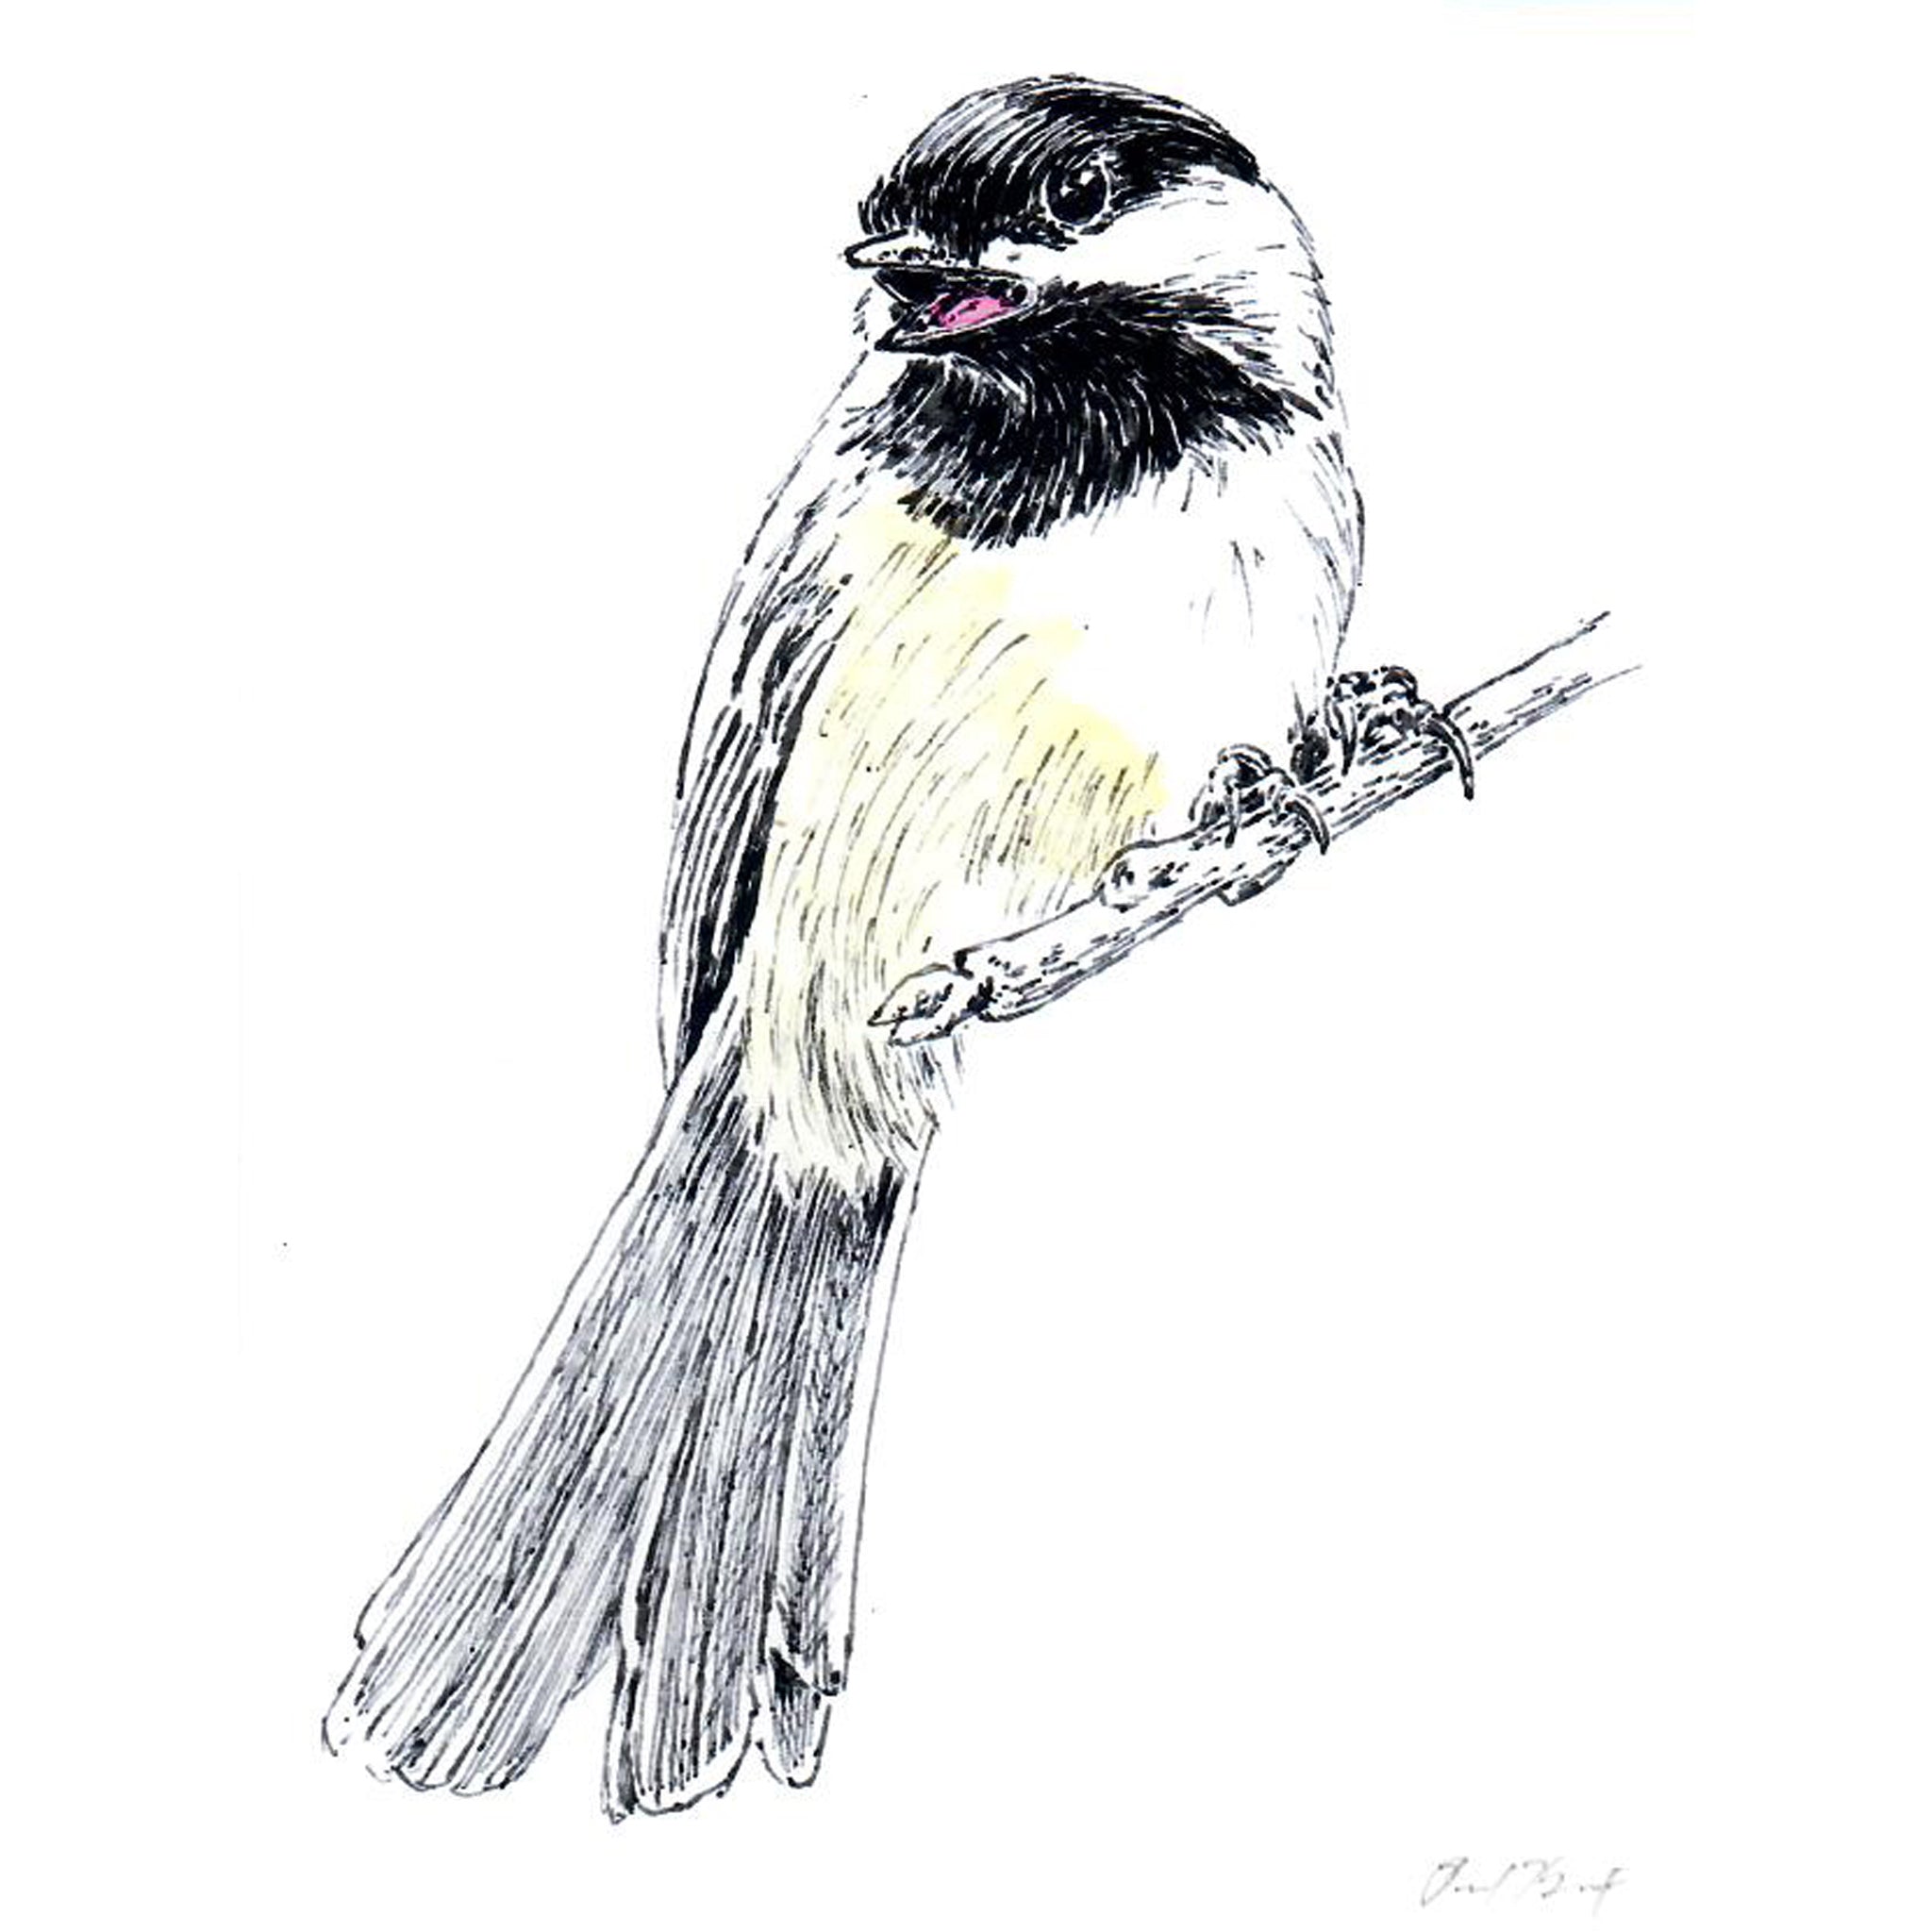 Chickadee Notecard, Pen and Ink Artwork by Paul Kmiotek